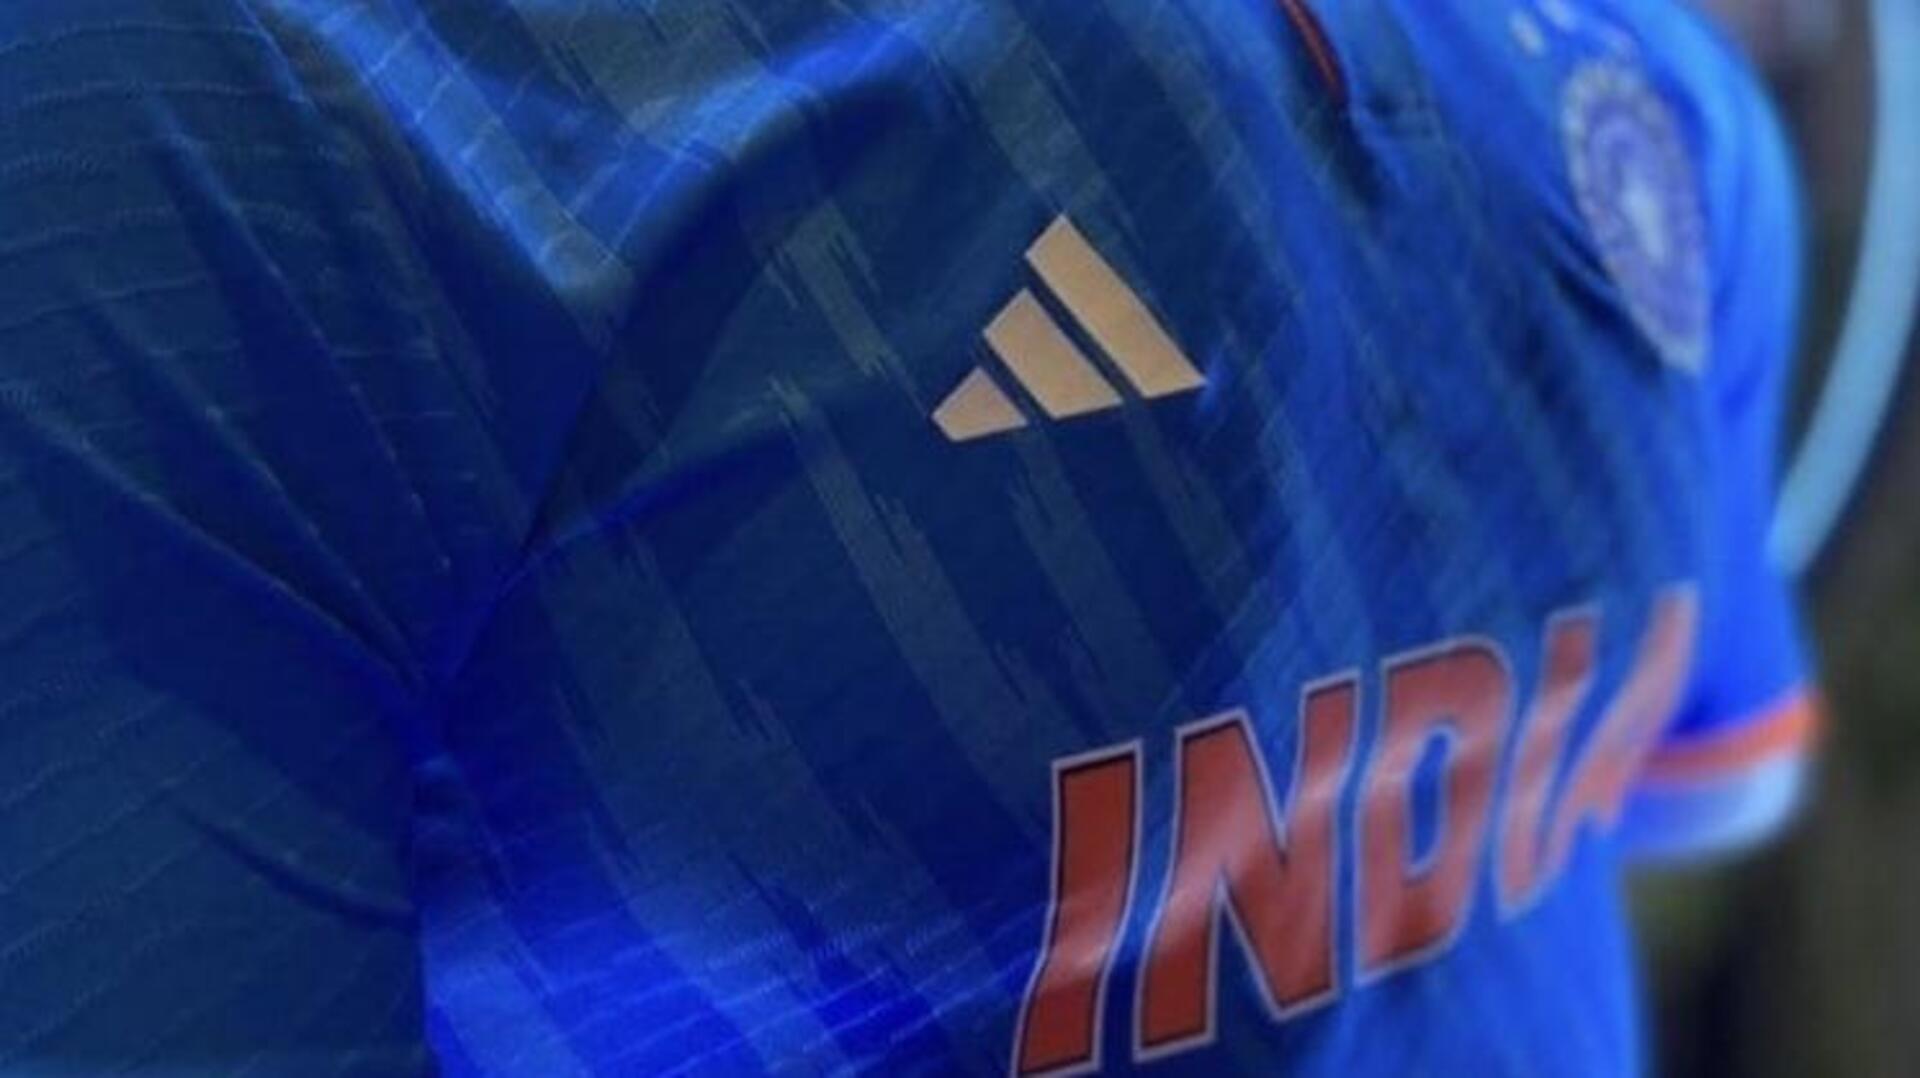 भारतीय क्रिकेट टीम की नई जर्सी लॉन्च, तीनों फॉर्मेट के लिए अलग-अलग है डिजाइन